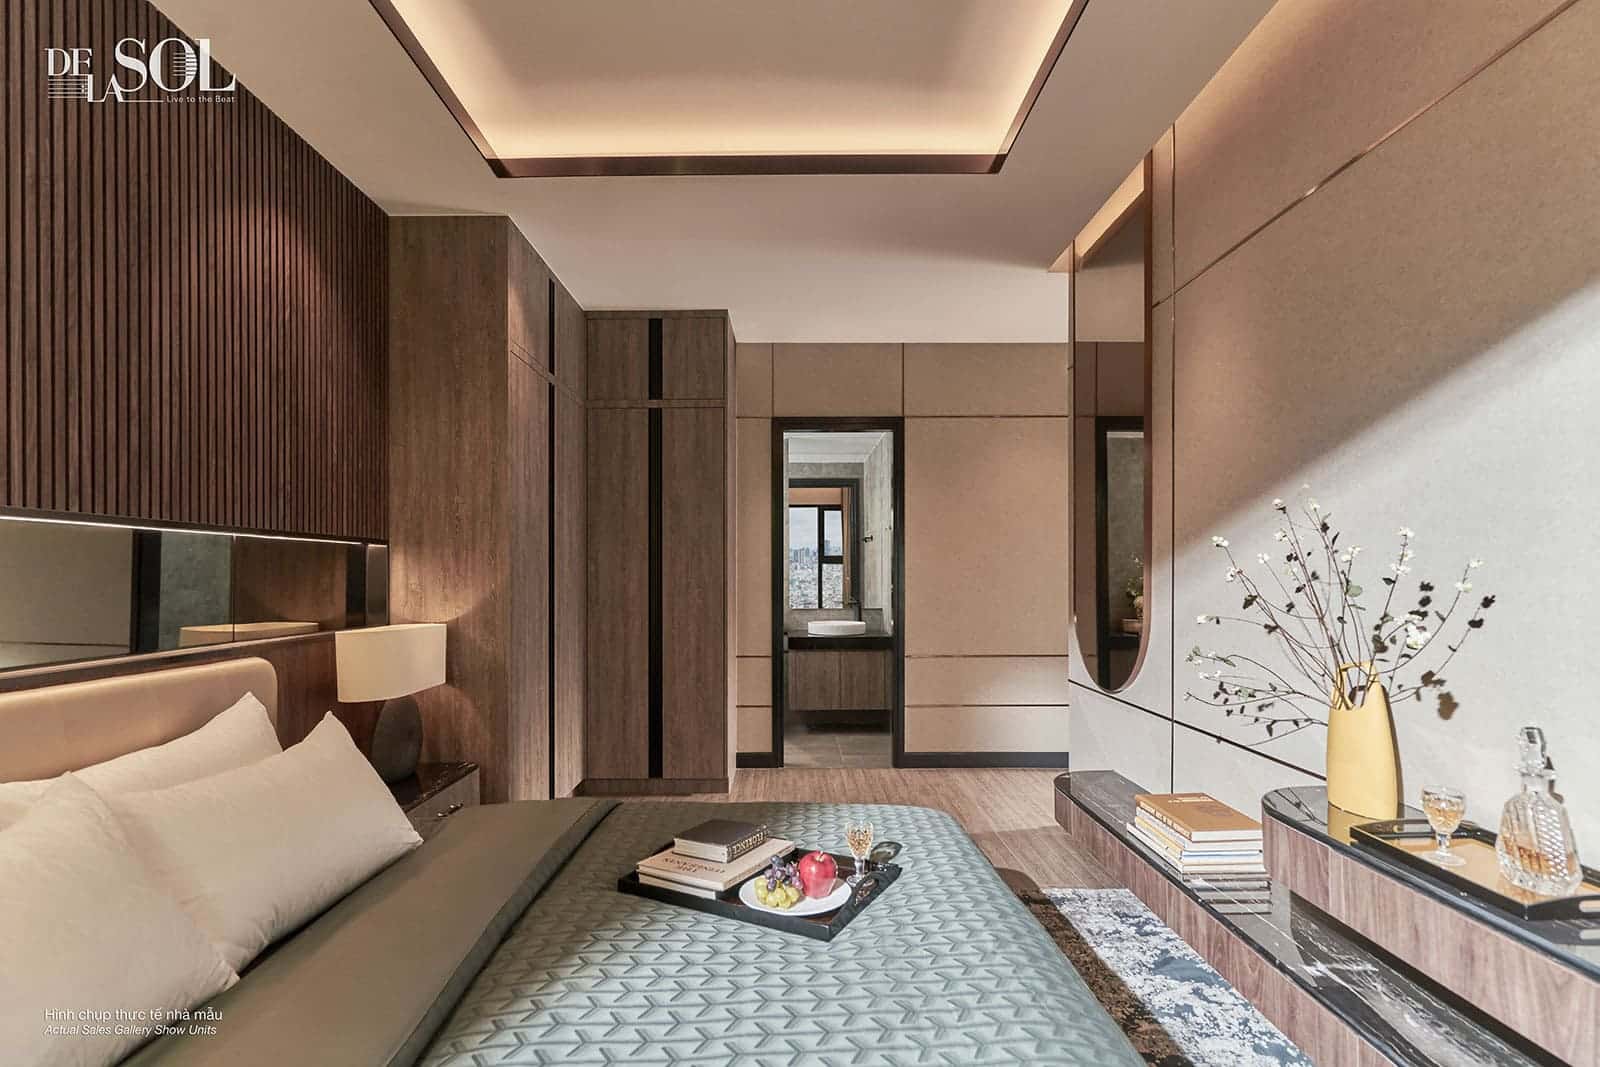 Hình ảnh căn hộ mẫu Lumi Hanoi CapitaLand được thiết kế sang trọng, mang đến không gian sống lý tưởng cho cư dân.